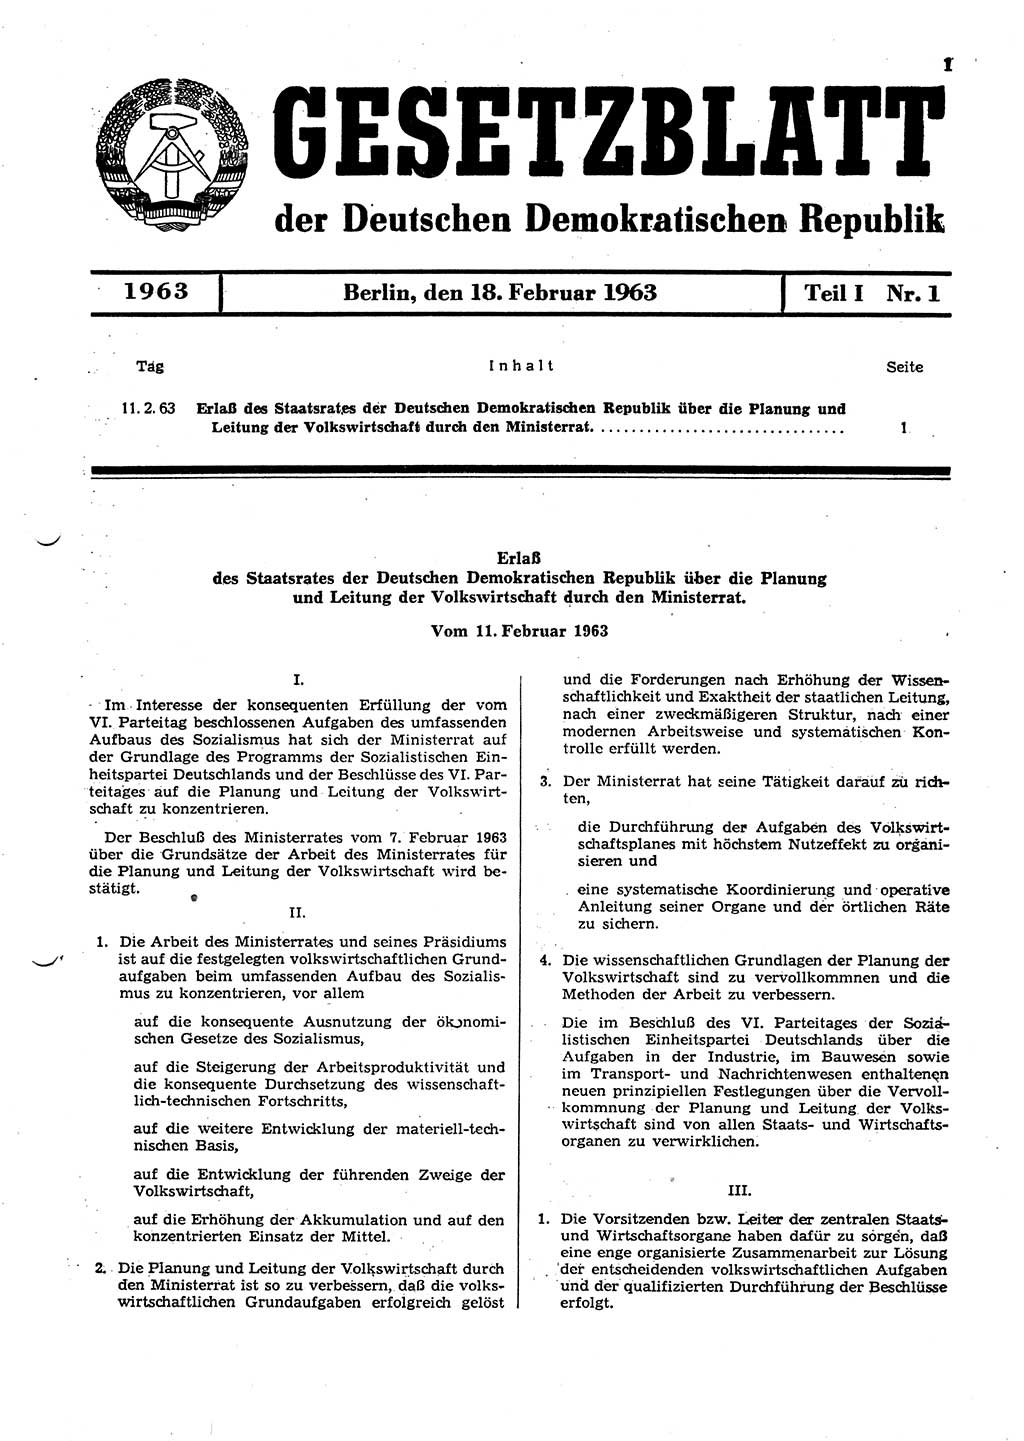 Gesetzblatt (GBl.) der Deutschen Demokratischen Republik (DDR) Teil Ⅰ 1963, Seite 1 (GBl. DDR Ⅰ 1963, S. 1)